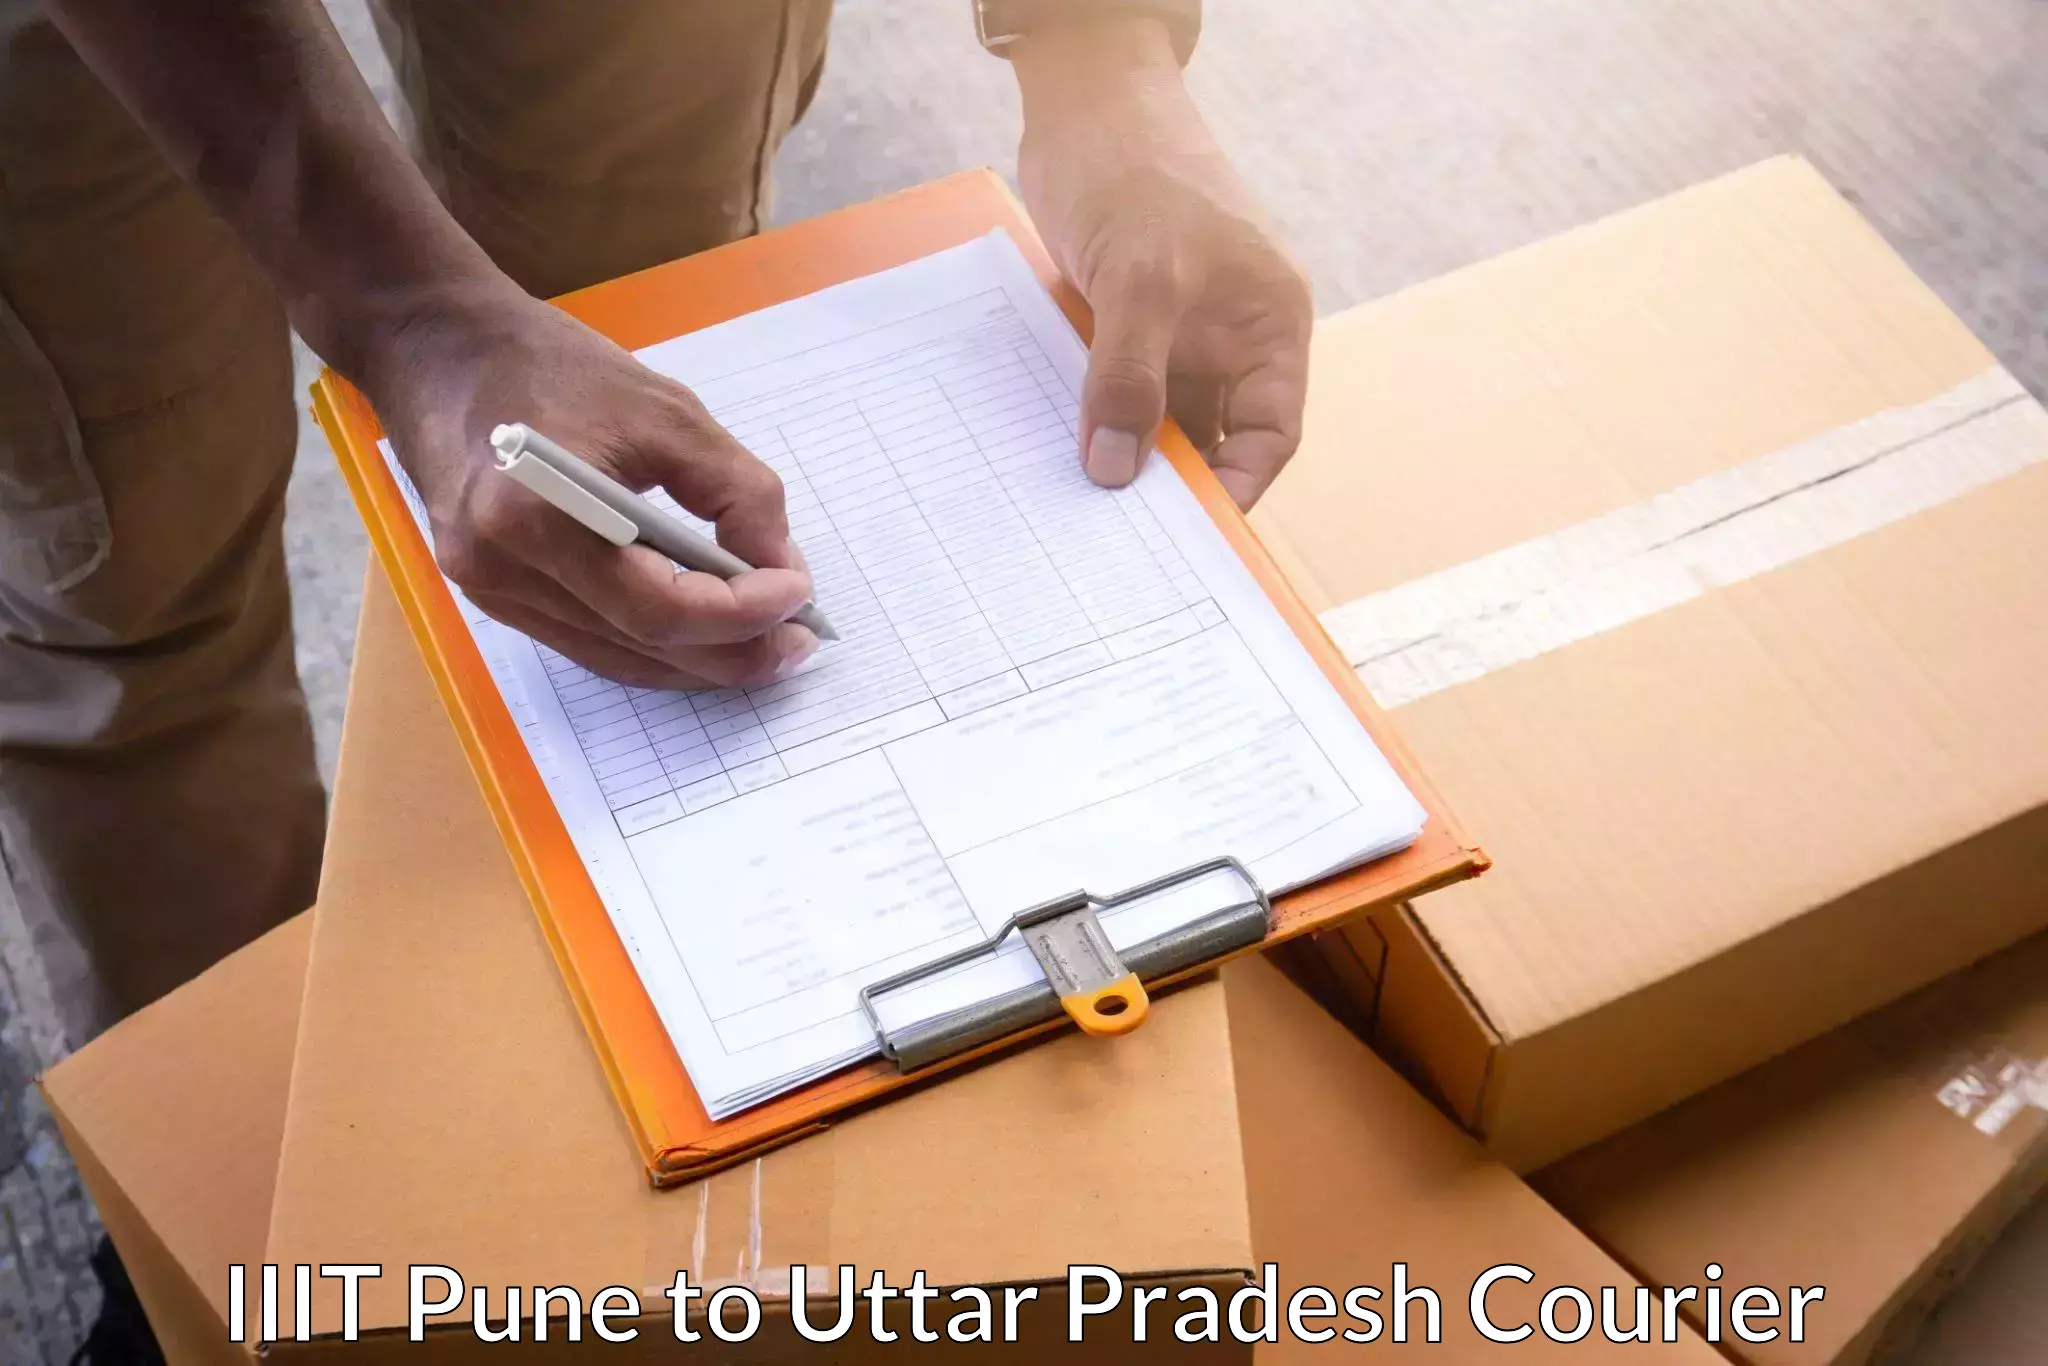 Courier app IIIT Pune to Rath